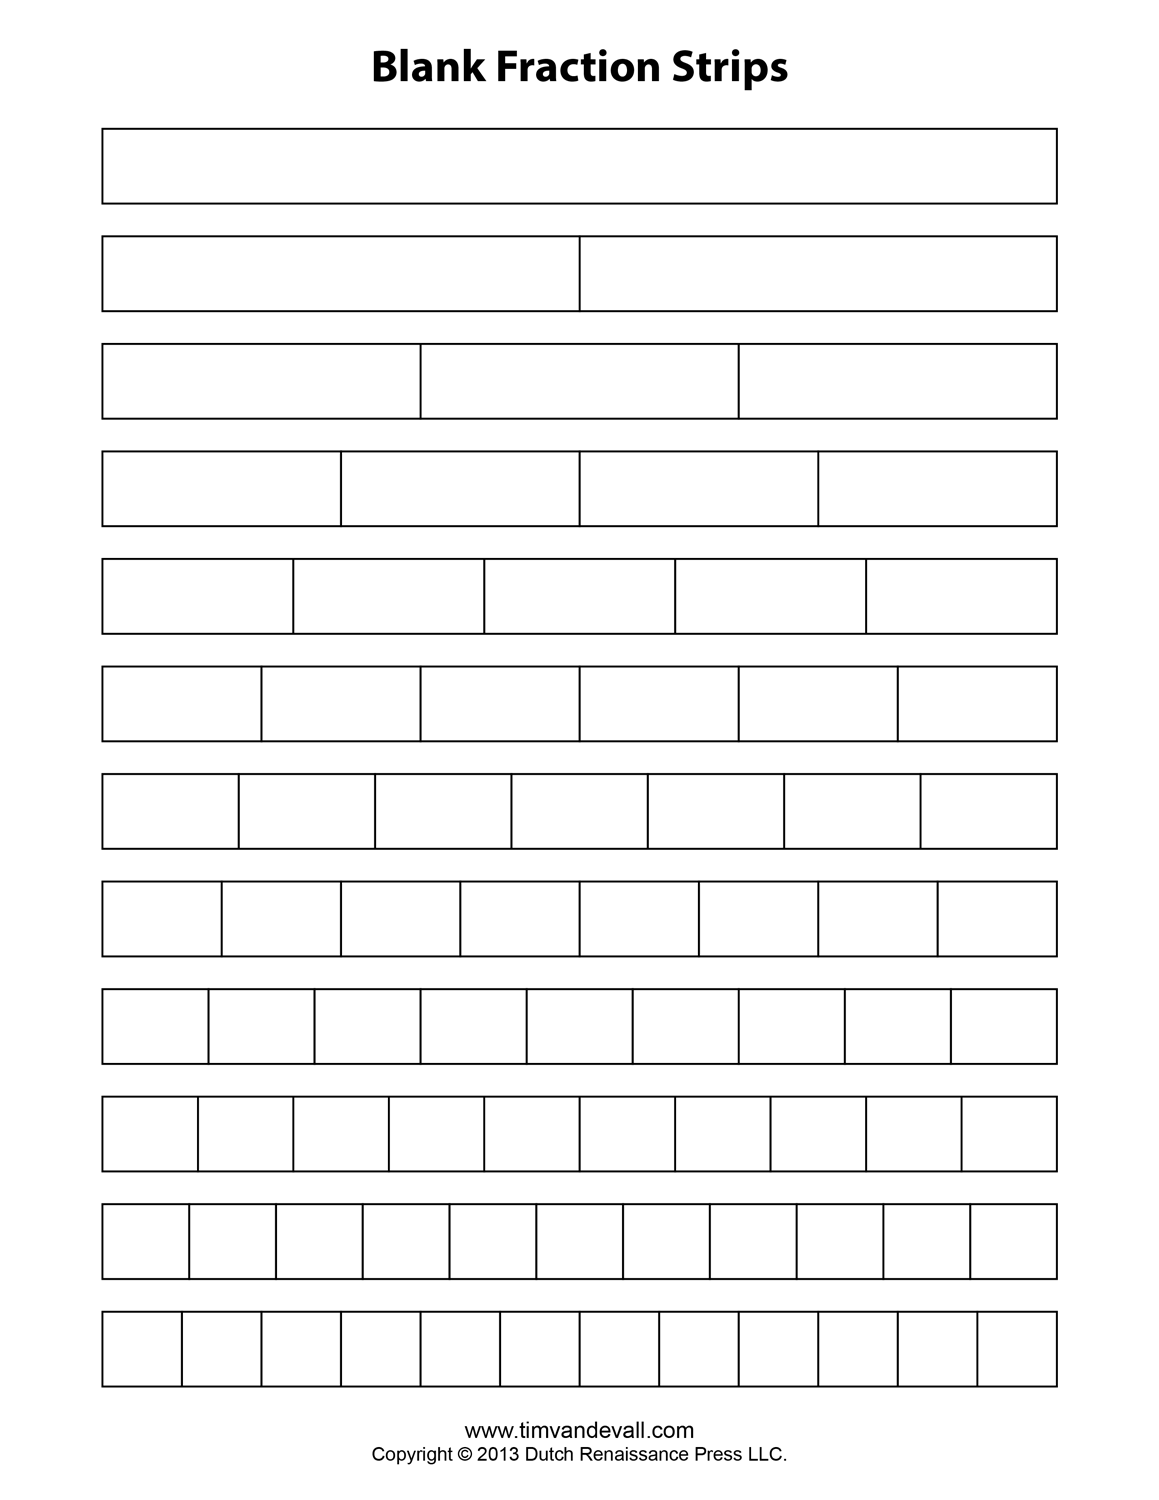 blank-fraction-bars-printable-printable-blank-world